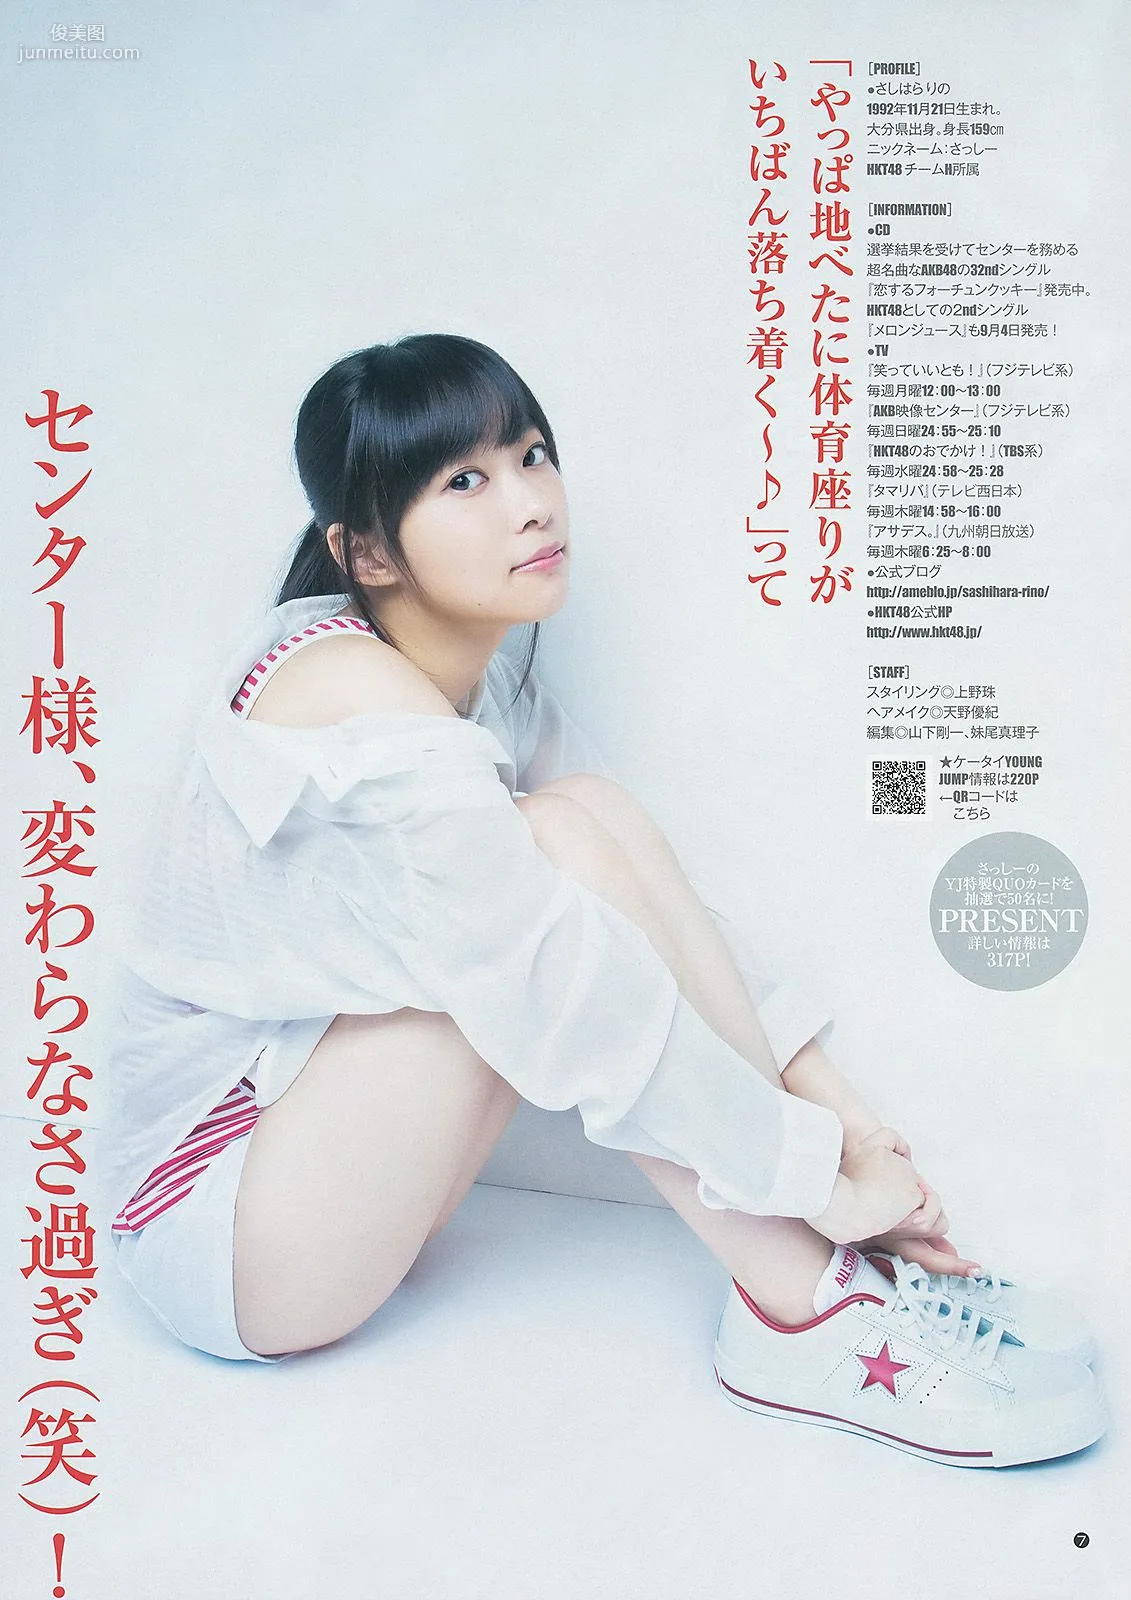 指原莉乃 根岸愛 竹富聖花 [Weekly Young Jump] 2013年No.39 写真杂志8